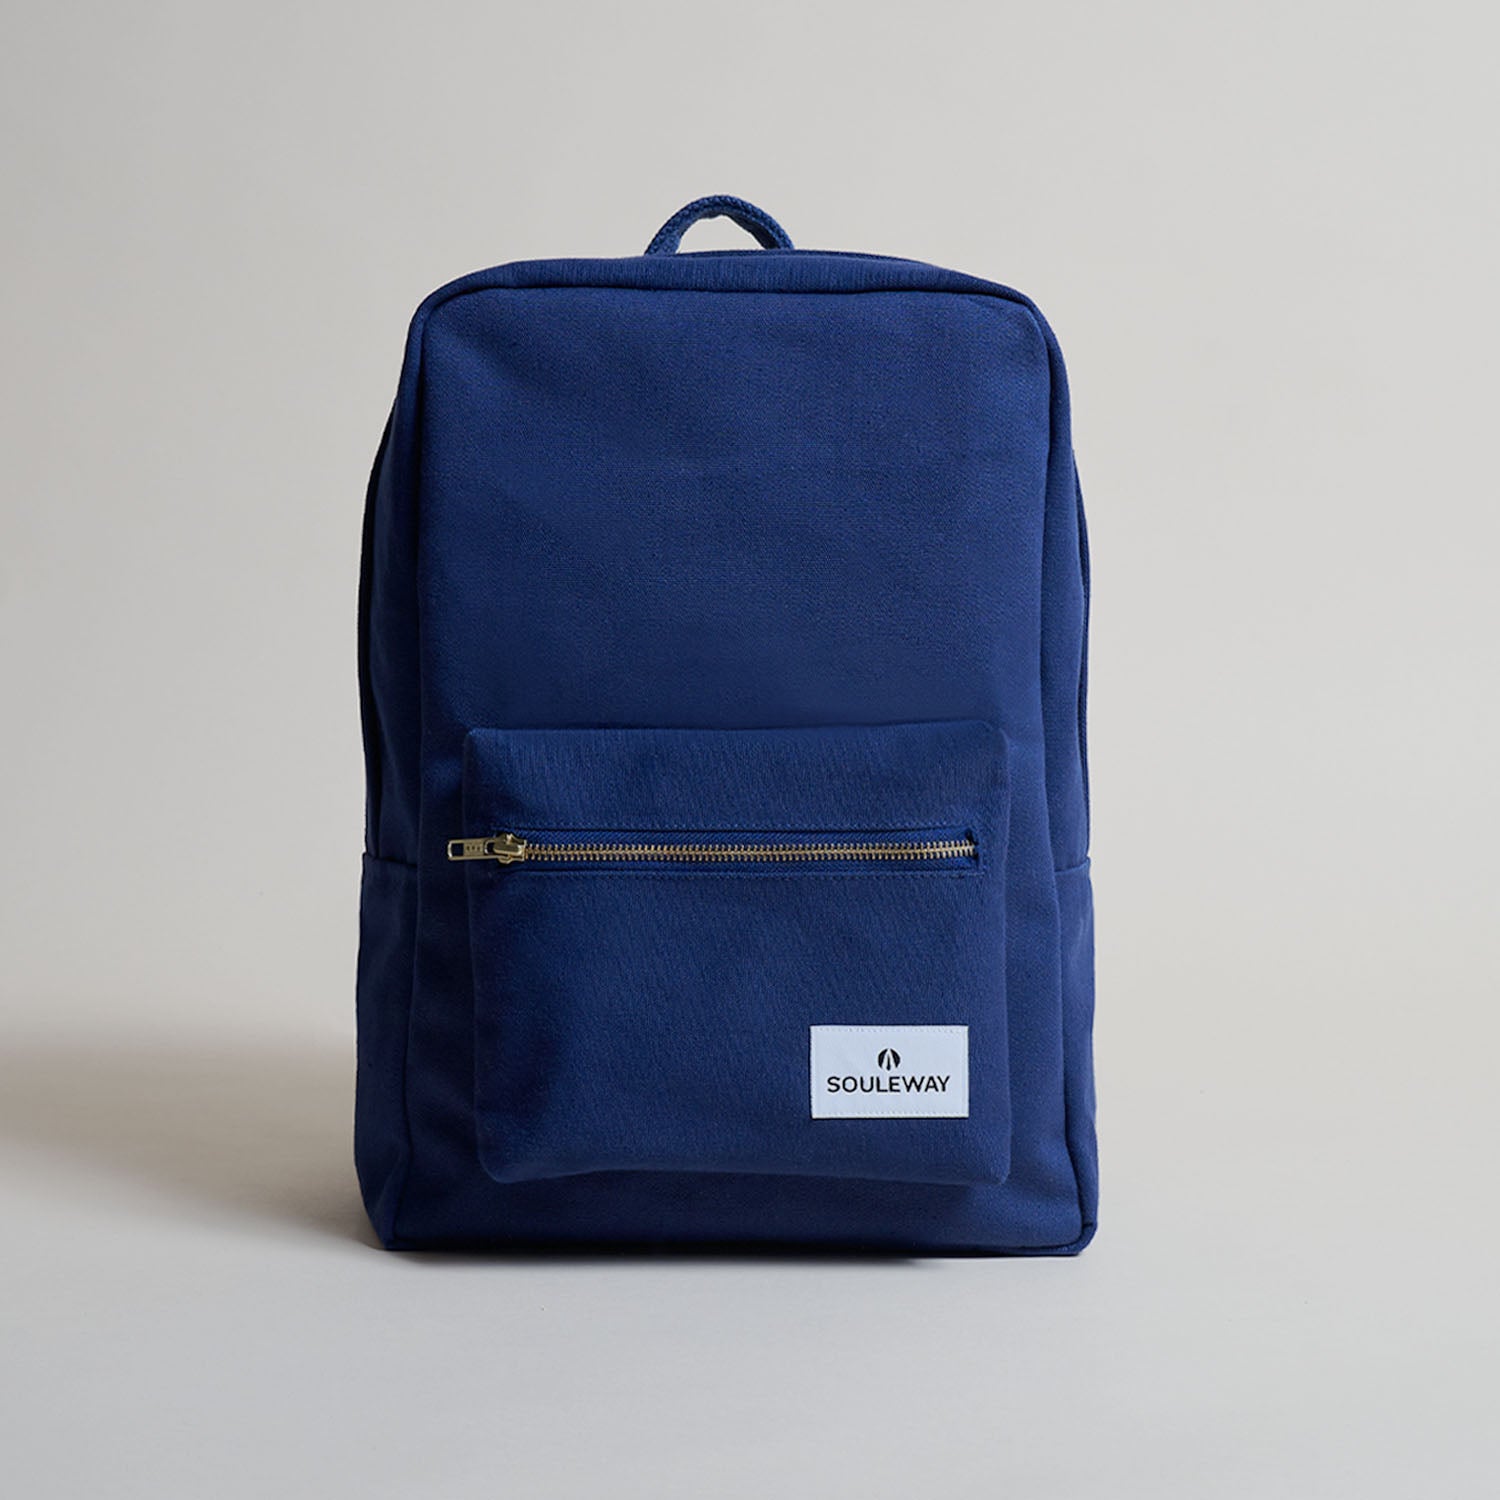 SOULEWAY - Casual Backpack, Rucksack, 12 Liter Volumen, Laptopfach 13 Zoll, Made in Germany, Handgepäck, vegan, wasserabweisend, Navy Blue von Souleway